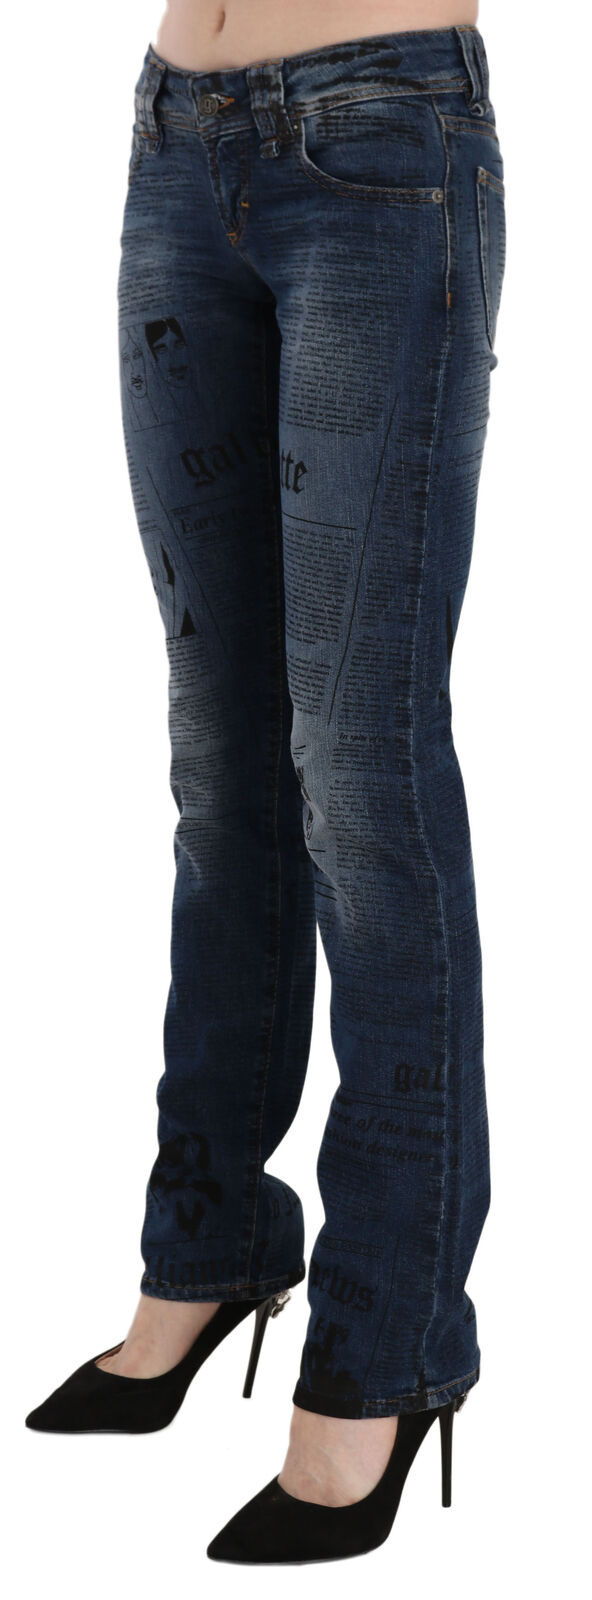 Тесни дънкови панталони с ниска талия със син вестникарски принт John Galliano